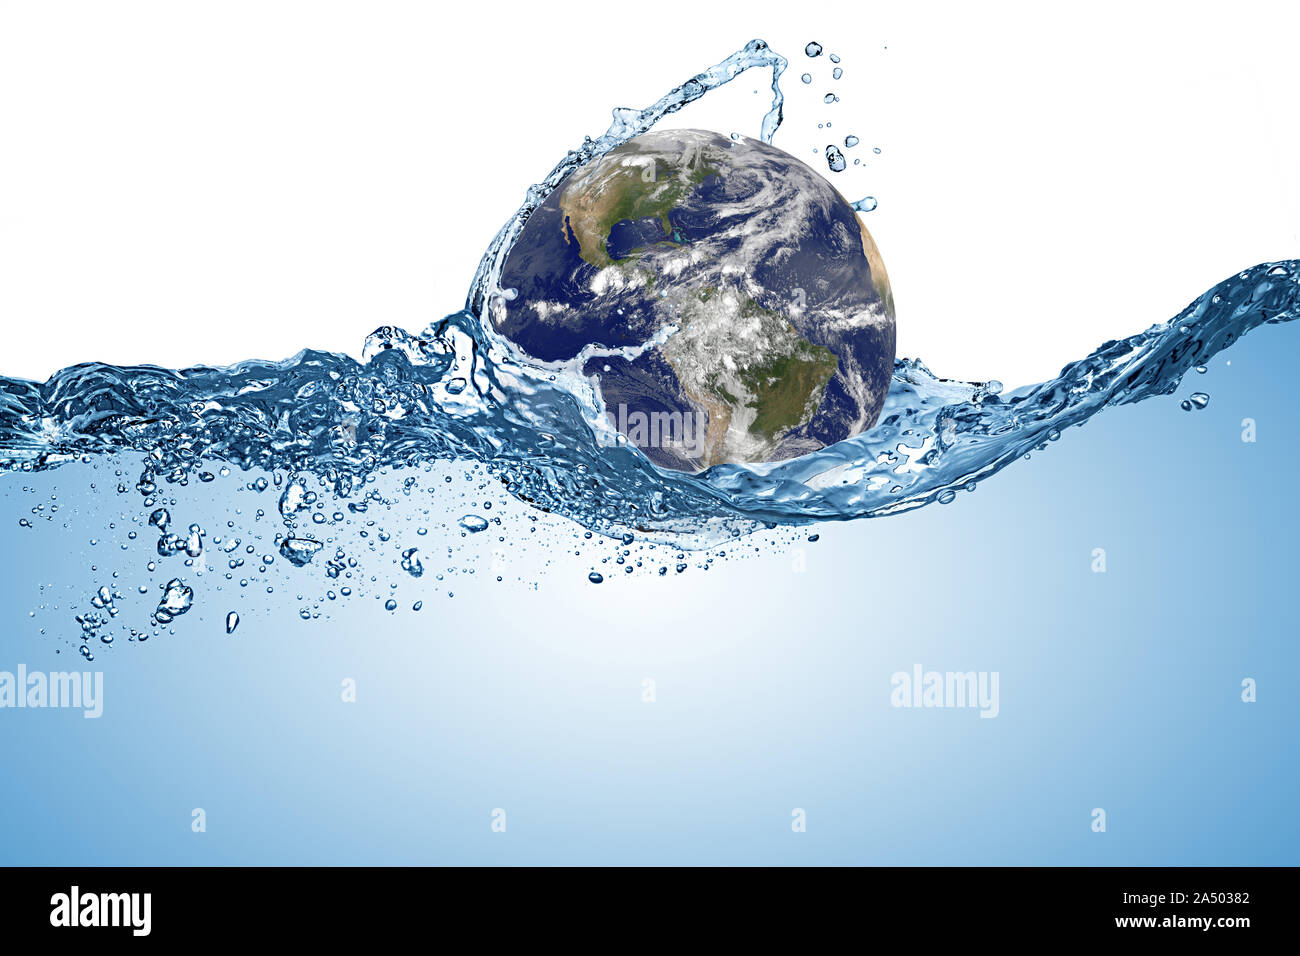 Planet Earth Globus in Welle von Wasser in den Ozean. Klimawandel globale Erwärmung Konzept auf weißem Hintergrund. Elemente dieses Bild eingerichtet Stockfoto